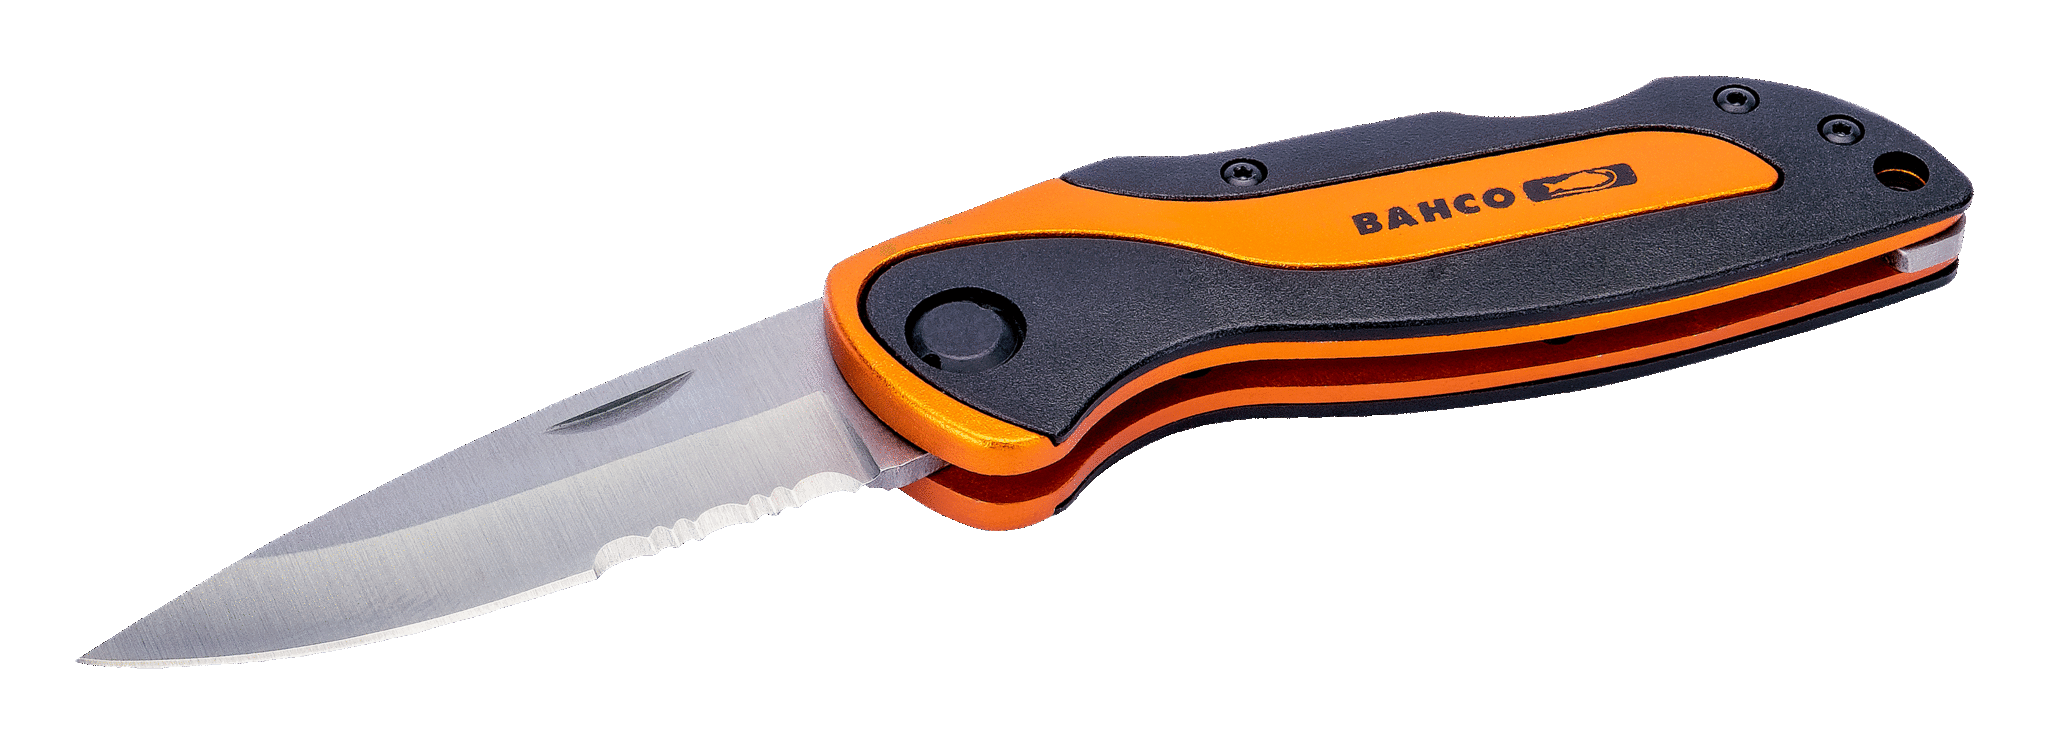 Универсальный складной нож BAHCO KBSK-01